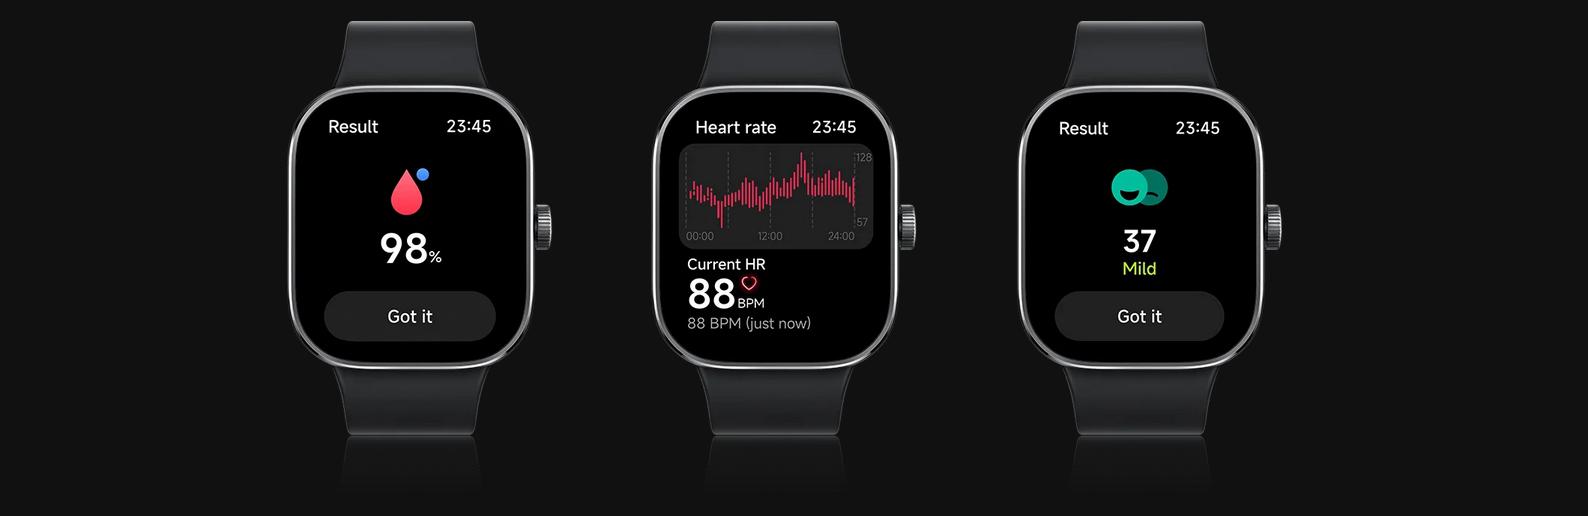 Smartwatch Xiaomi Redmi Watch 4 - ocena poziomu natlenienia krwi, monitoring tętna i kontrola poziomu stresu